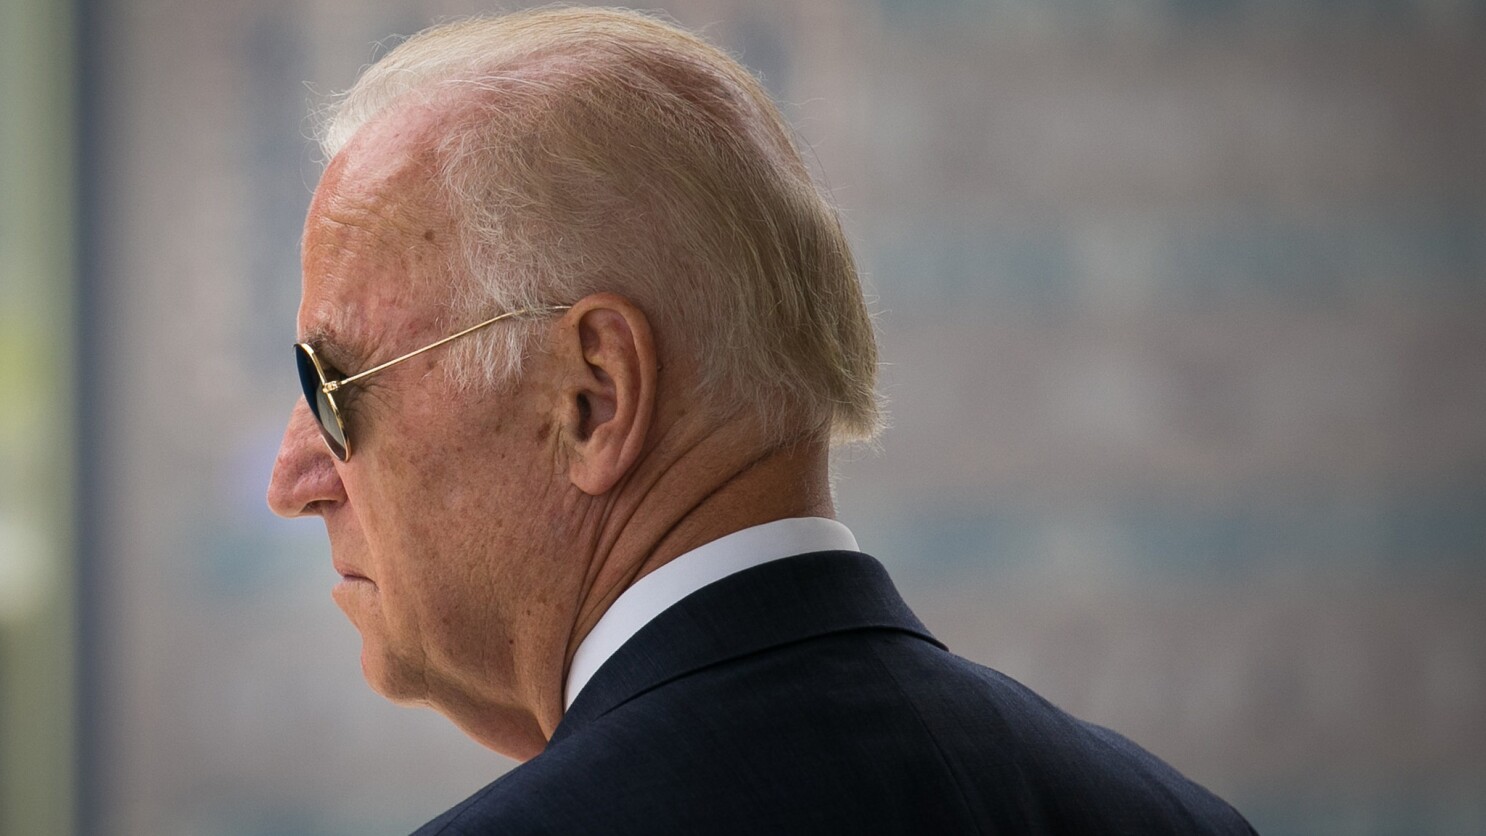 Njeriu që Biden ia besoi sanksionet: Mezi po pres t’ia filloj punës, do të ketë shumë për të korruptuarit